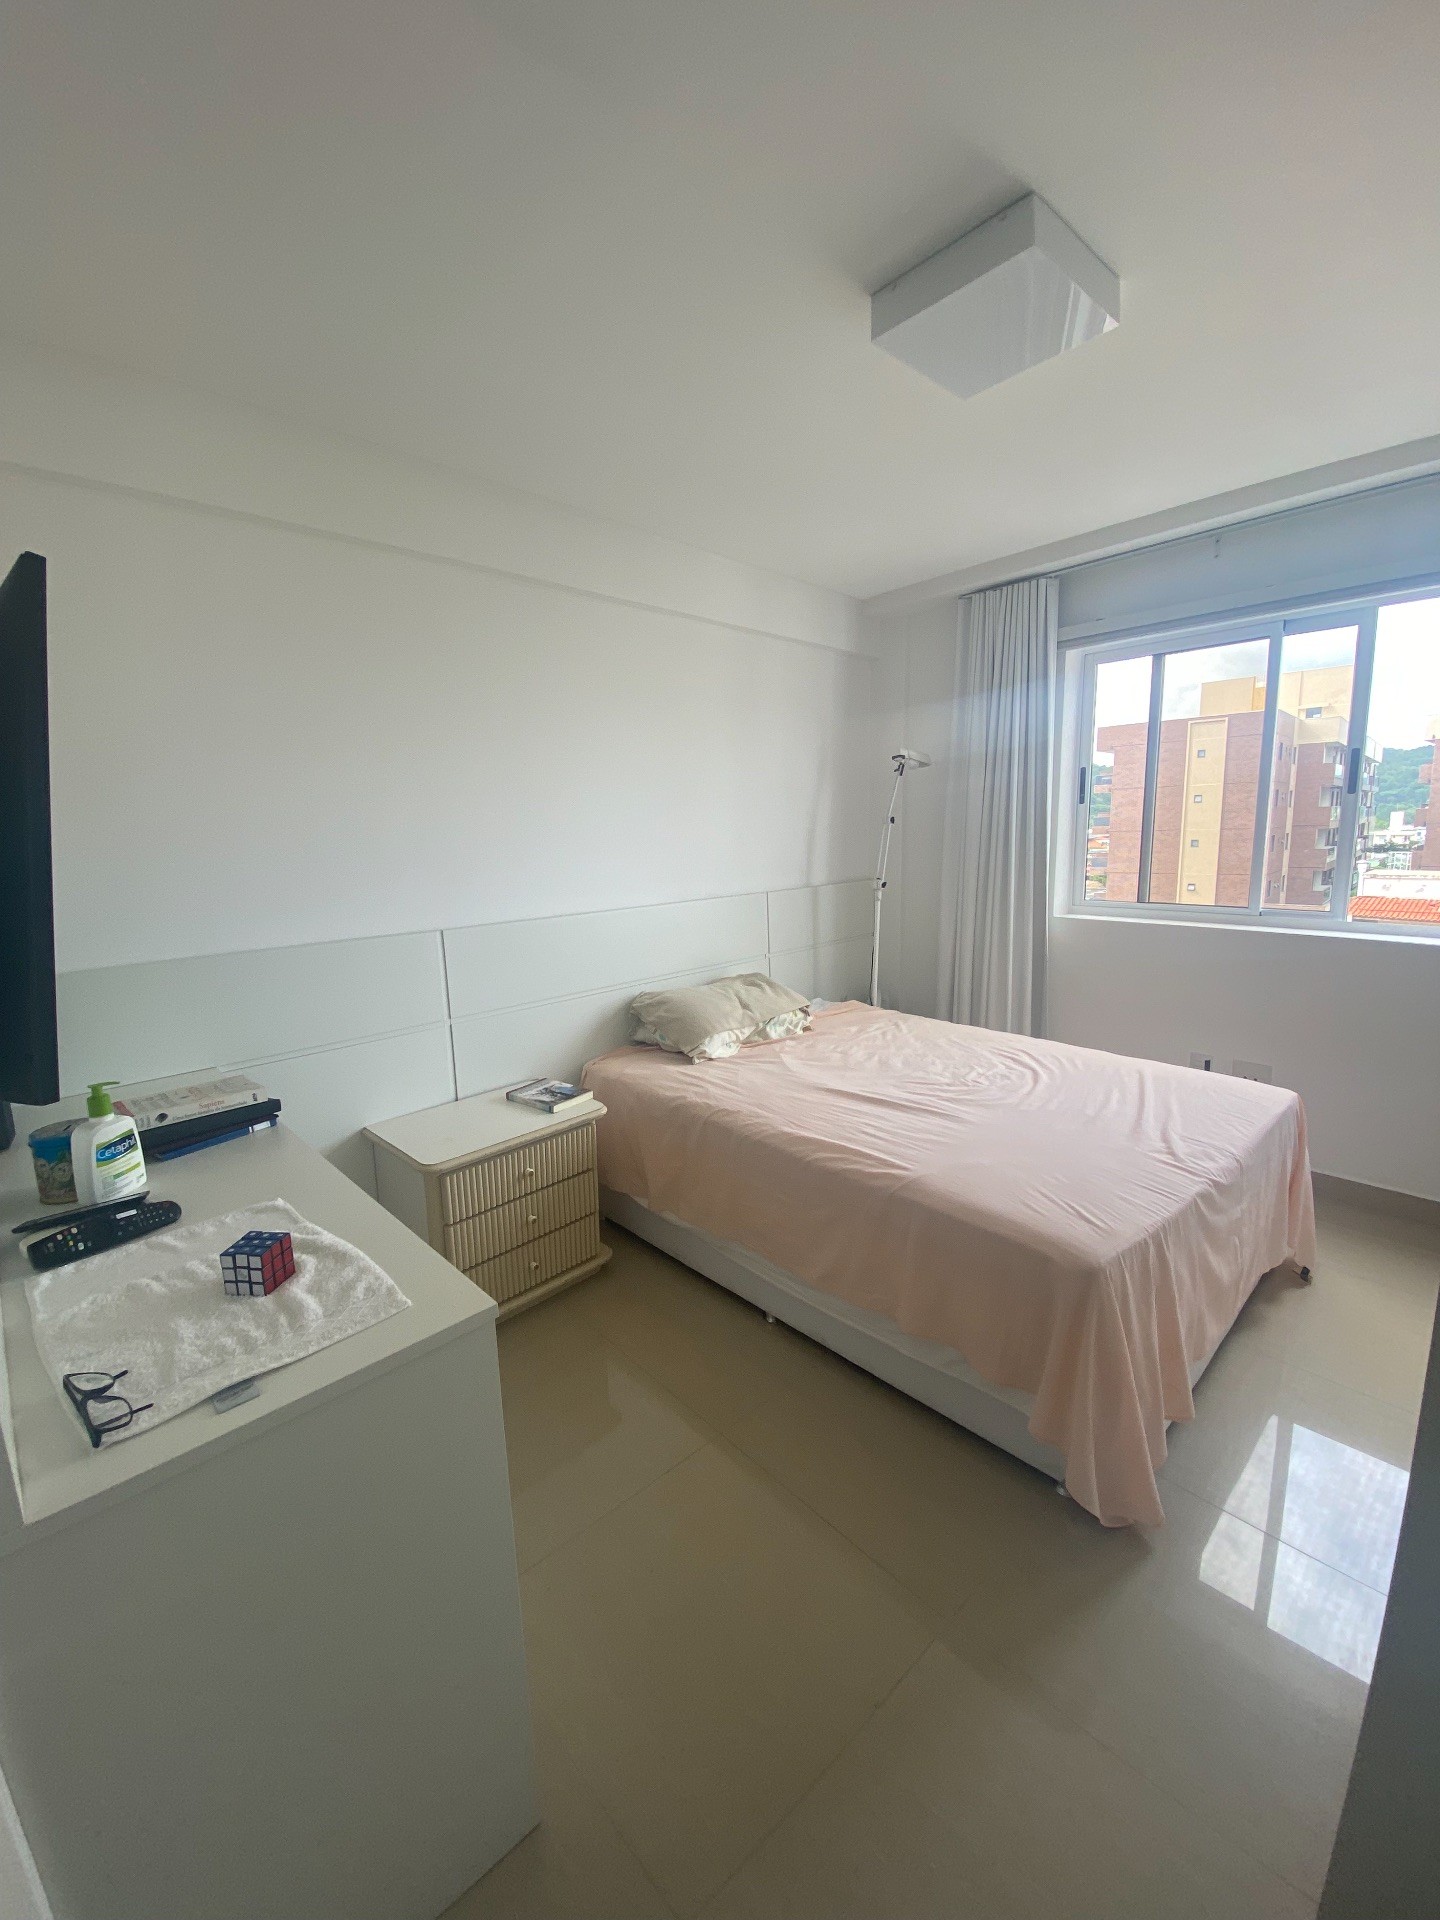 Oportunidade, Apartamento 1 por andar, mobiliado, 3 dormitórios, sendo 1 suíte, rua reta ao mar, localizado em Balneário Camboriú - SC